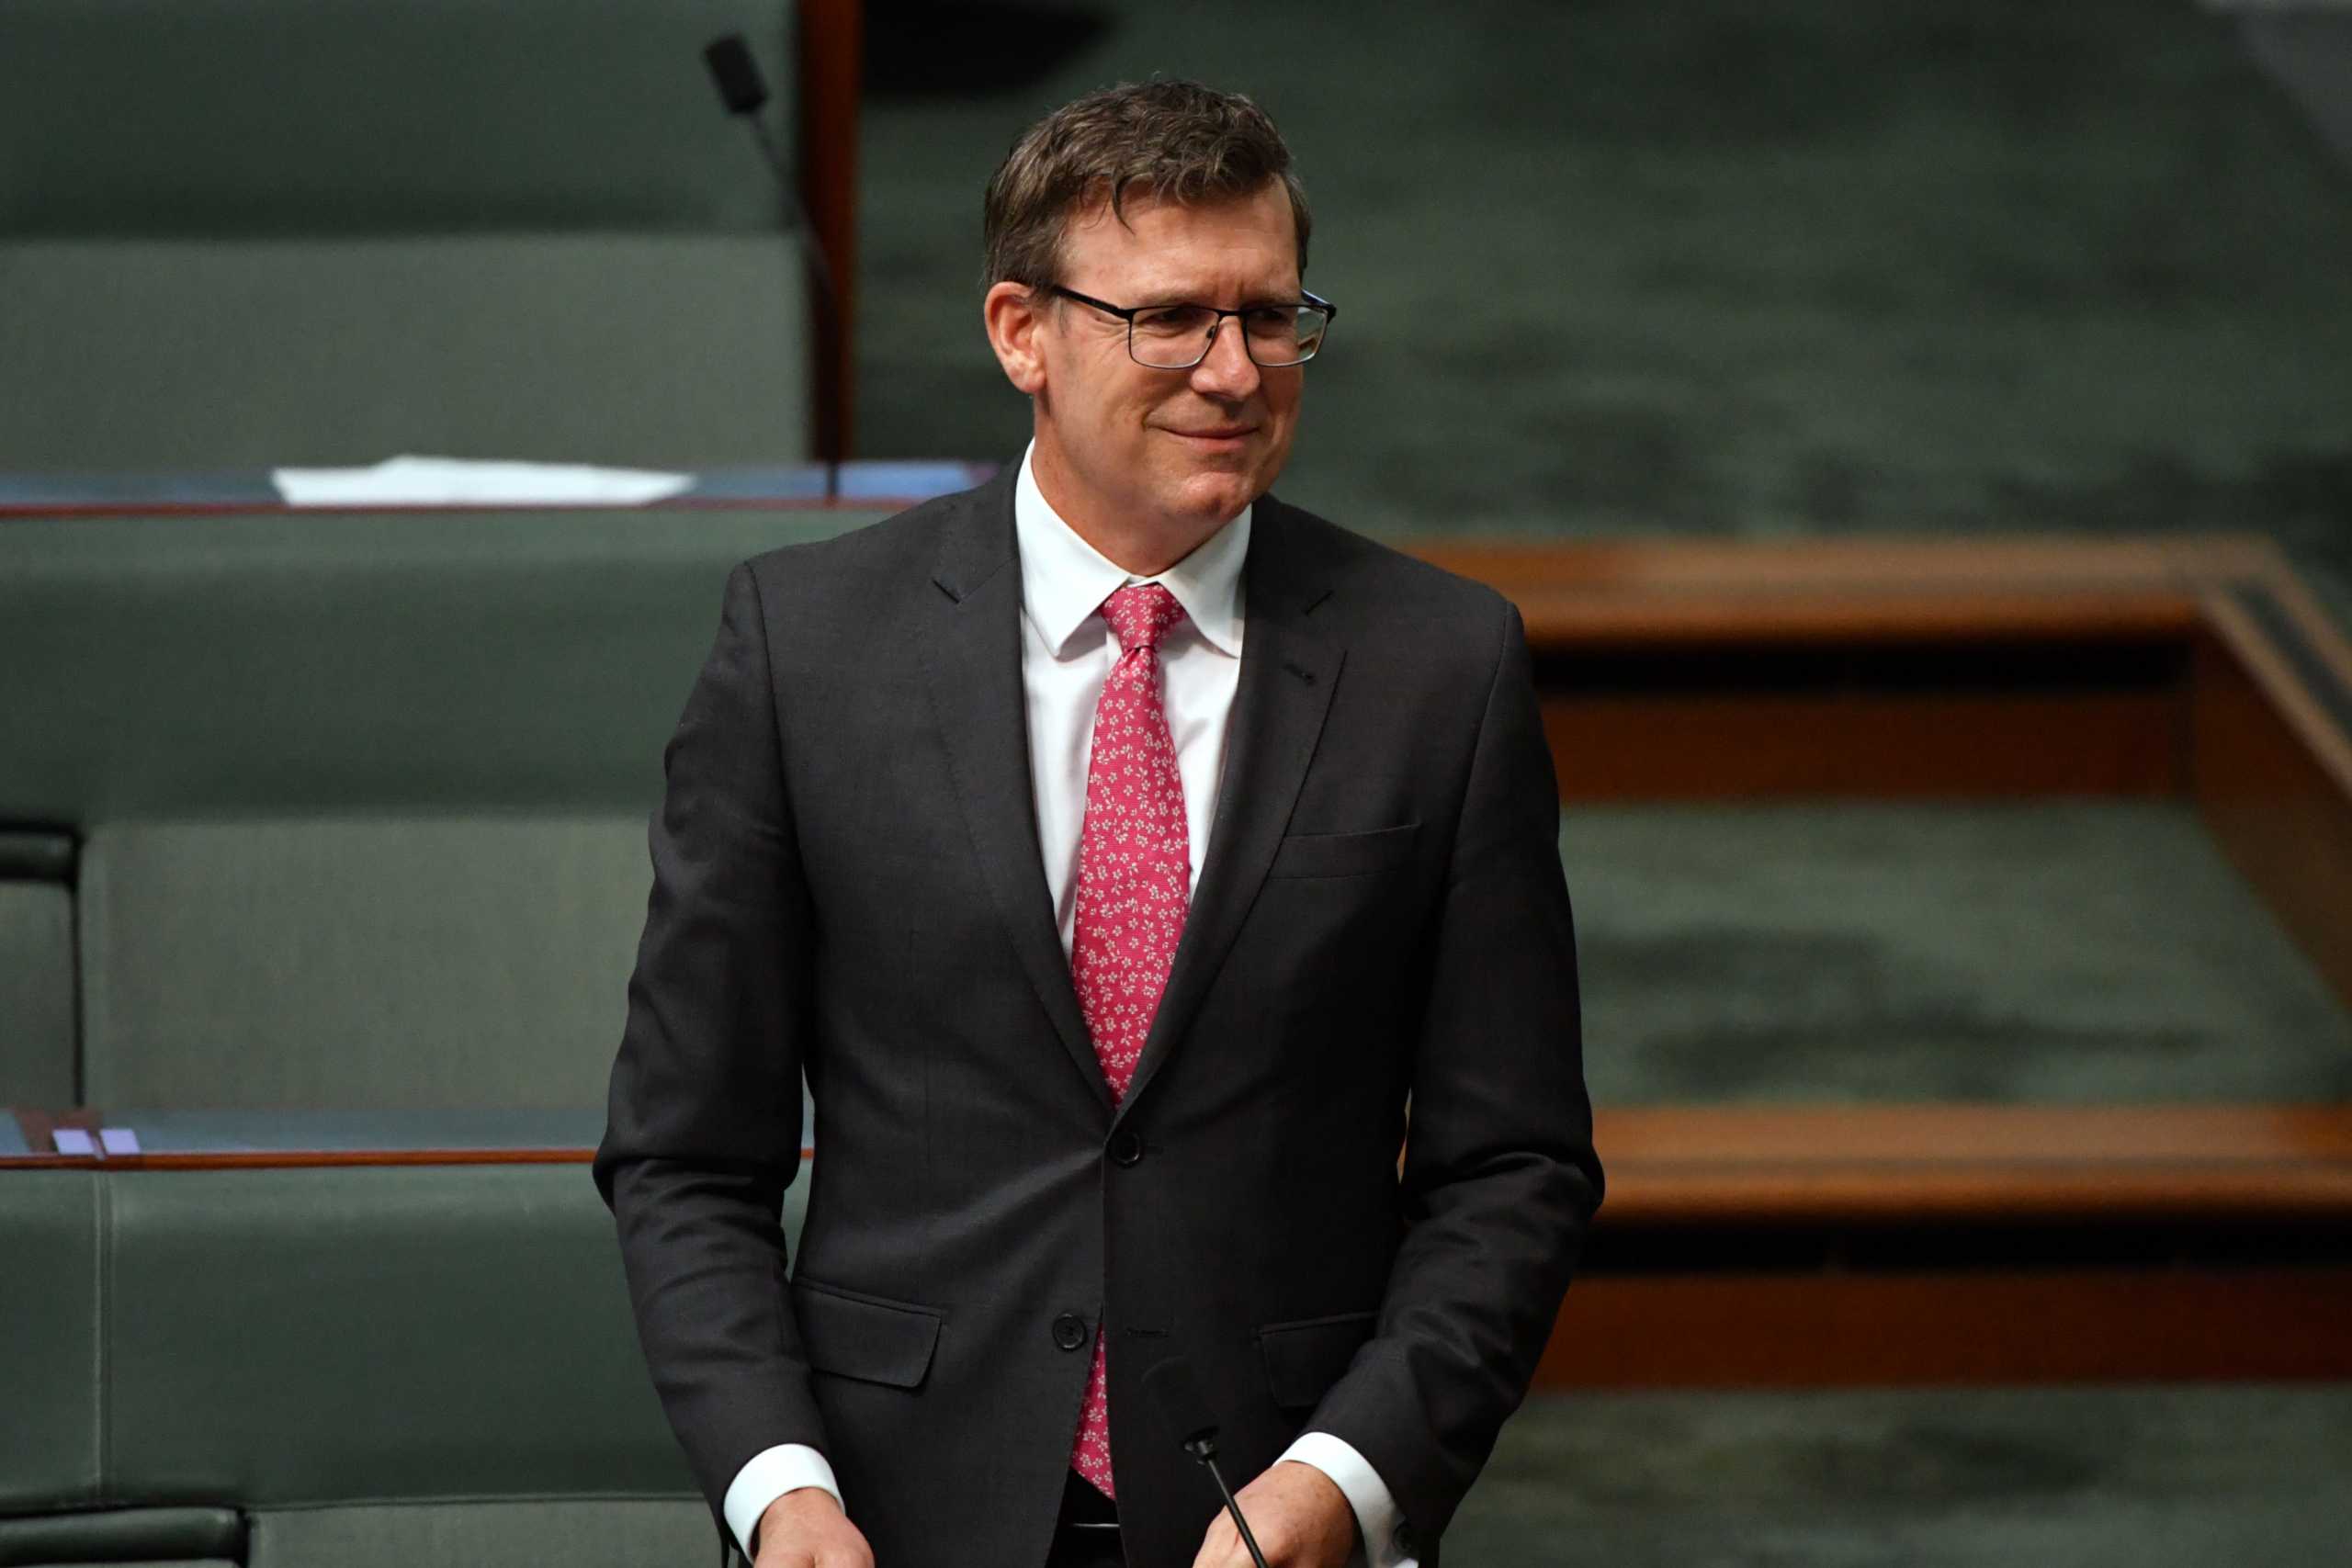 Αυστραλία: Σε διαθεσιμότητα ο υπουργός Παιδείας - Κατηγορείται ότι παρενόχλησε υπάλληλο